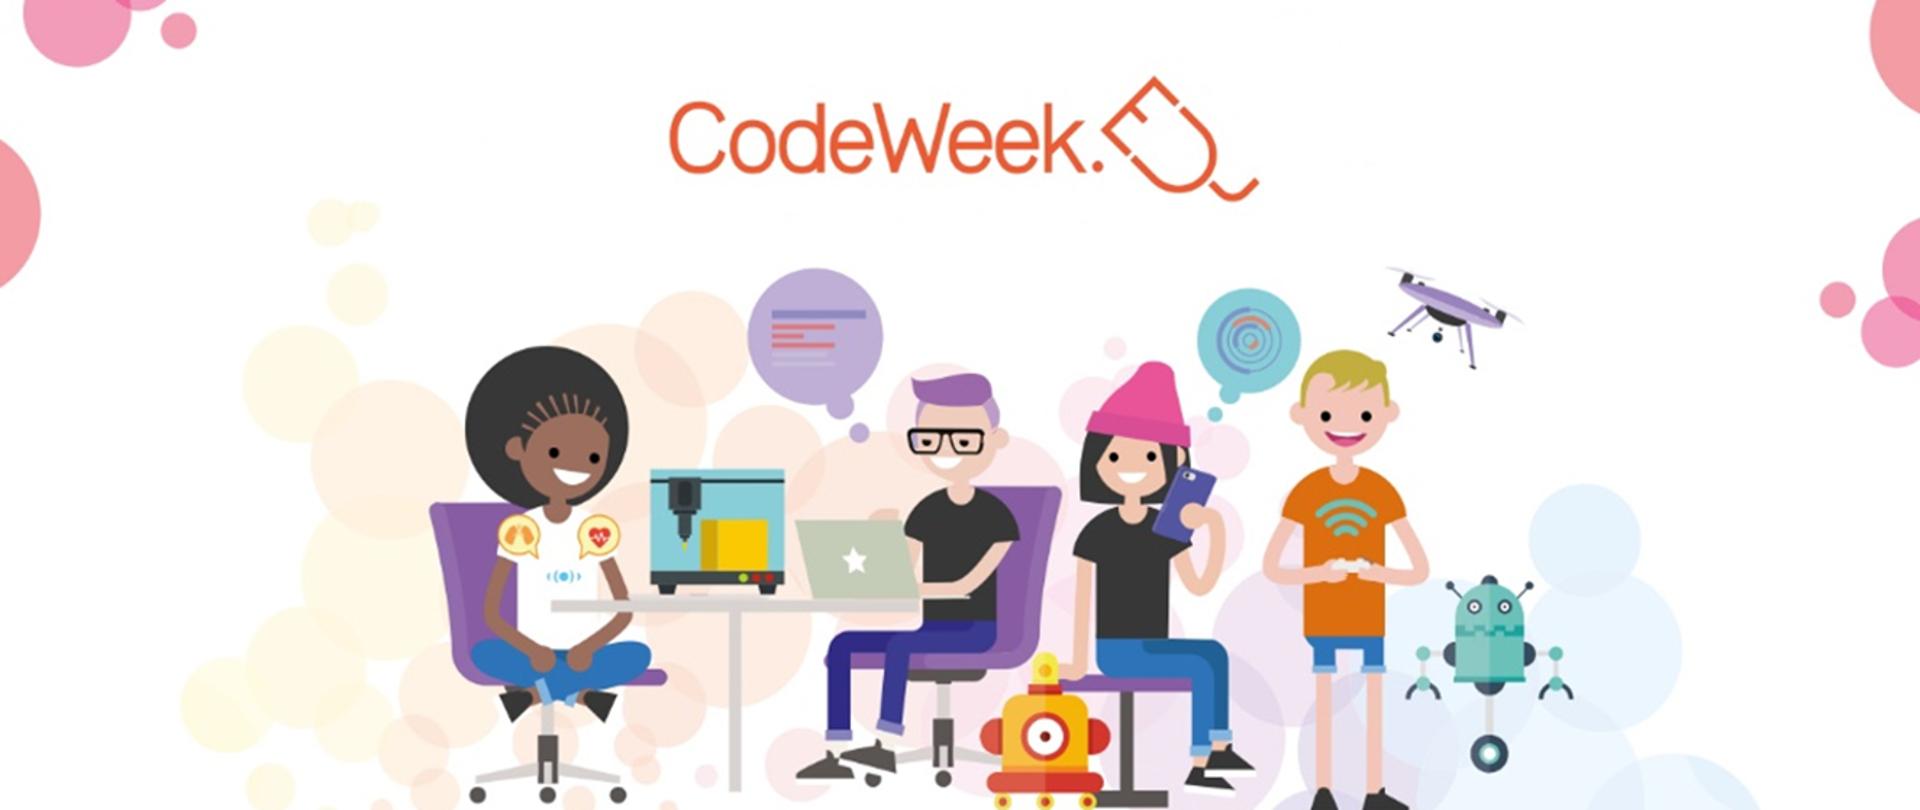 Grafika z dziećmi i sprzętem elektronicznym oraz napisem "CodeWeek"